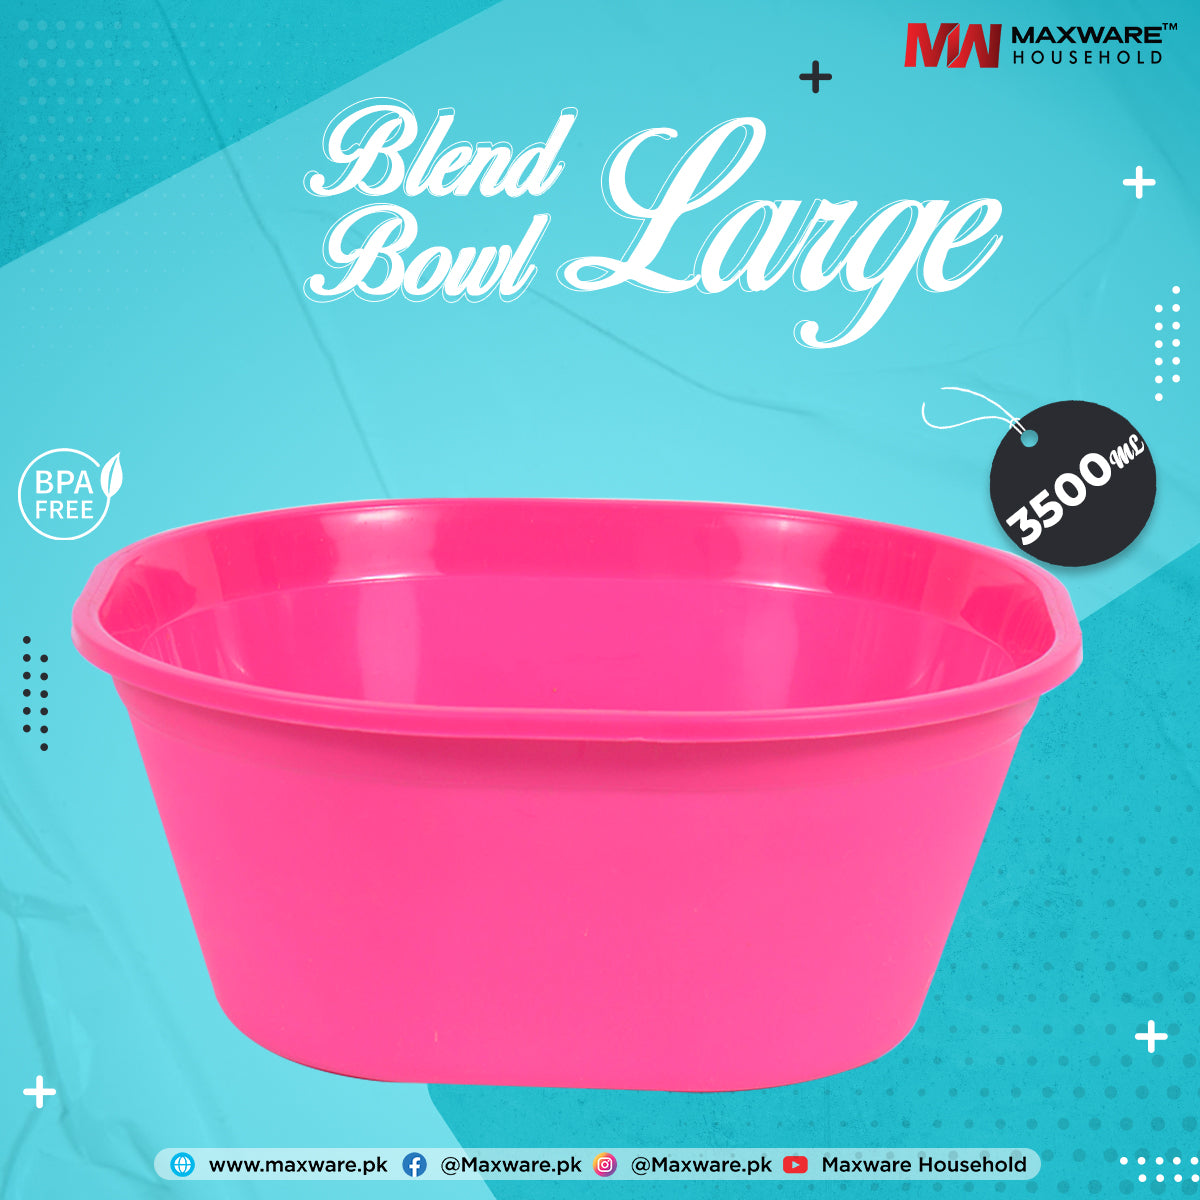 Blend Bowl Large - Maxwaremart